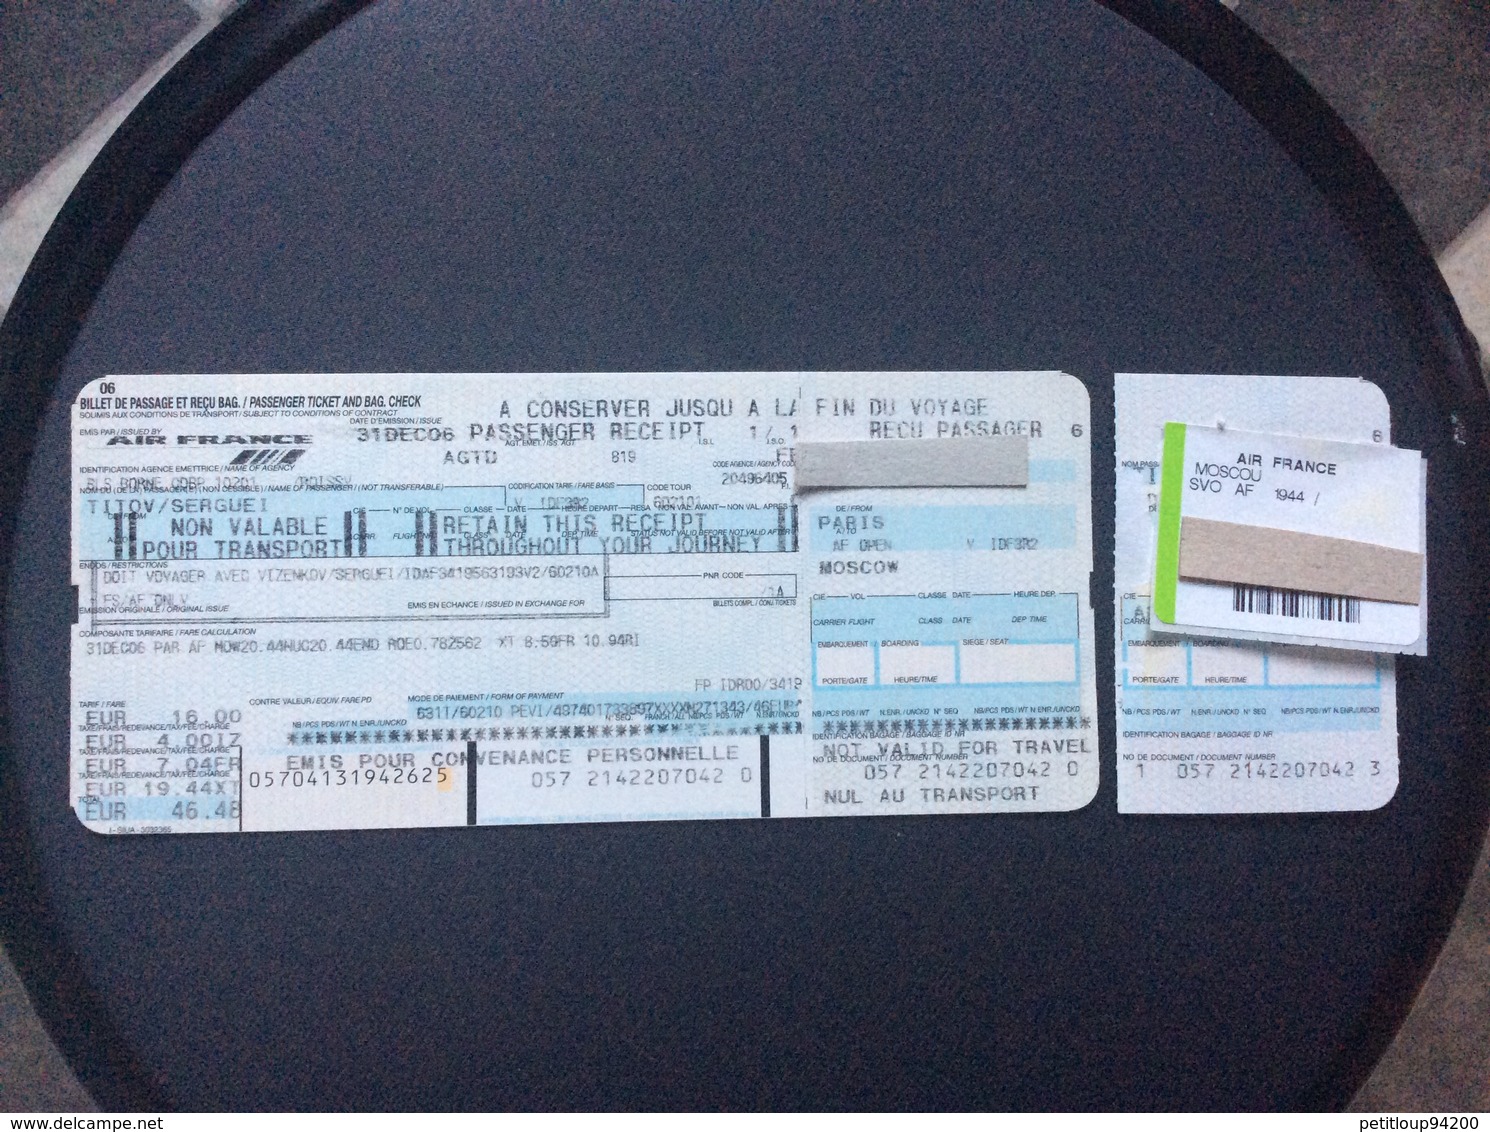 AIR FRANCE Billet De Passage Et Recu Bagage/Passenger Ticket And Bag Check PARIS>MOSCOU - Tickets